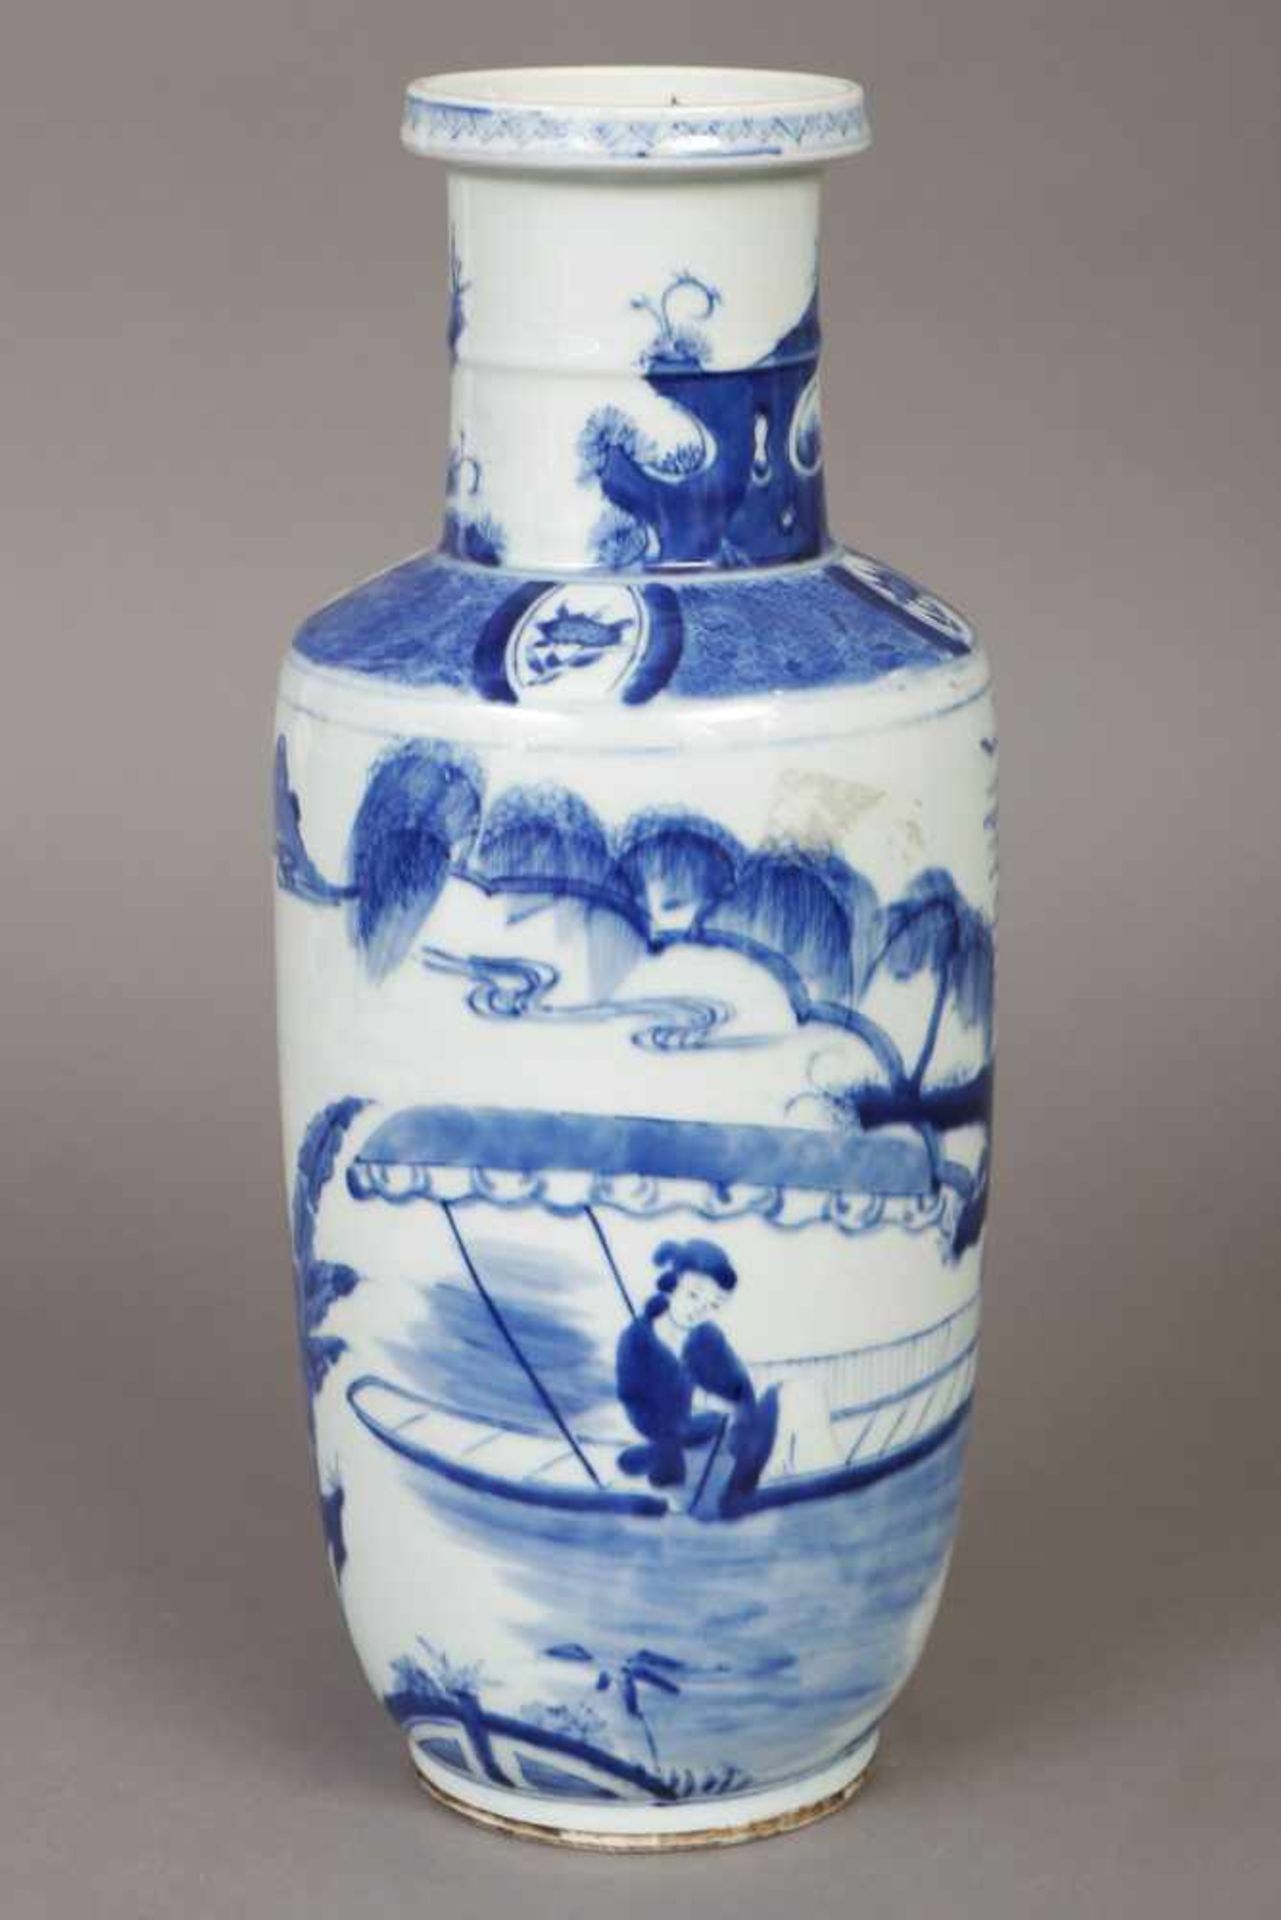 Chinesische Porzellanvase im Stile Mingwohl Qing Dynastie (1644-1912), zylindrischer Korpus mit - Image 2 of 2